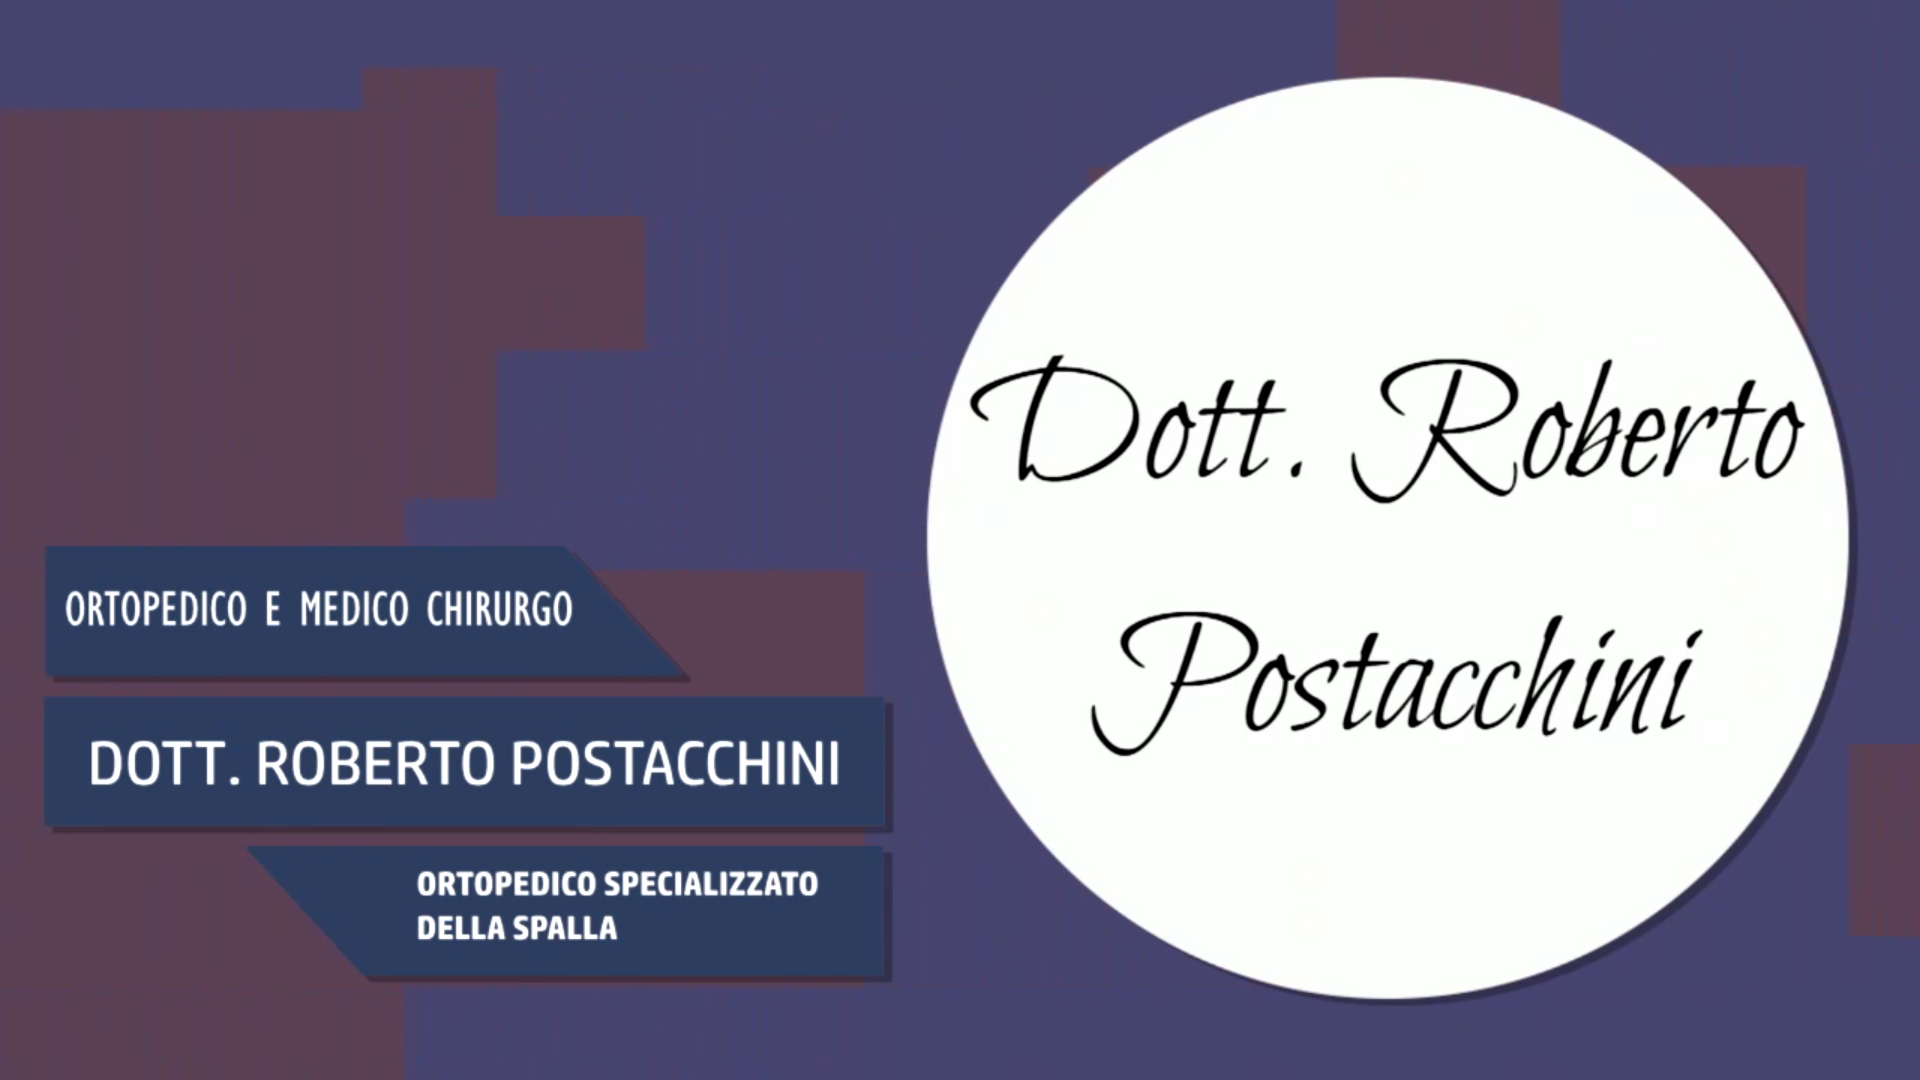 Intervista al Dott. Roberto Postacchini – Ortopedico specializzato della spalla